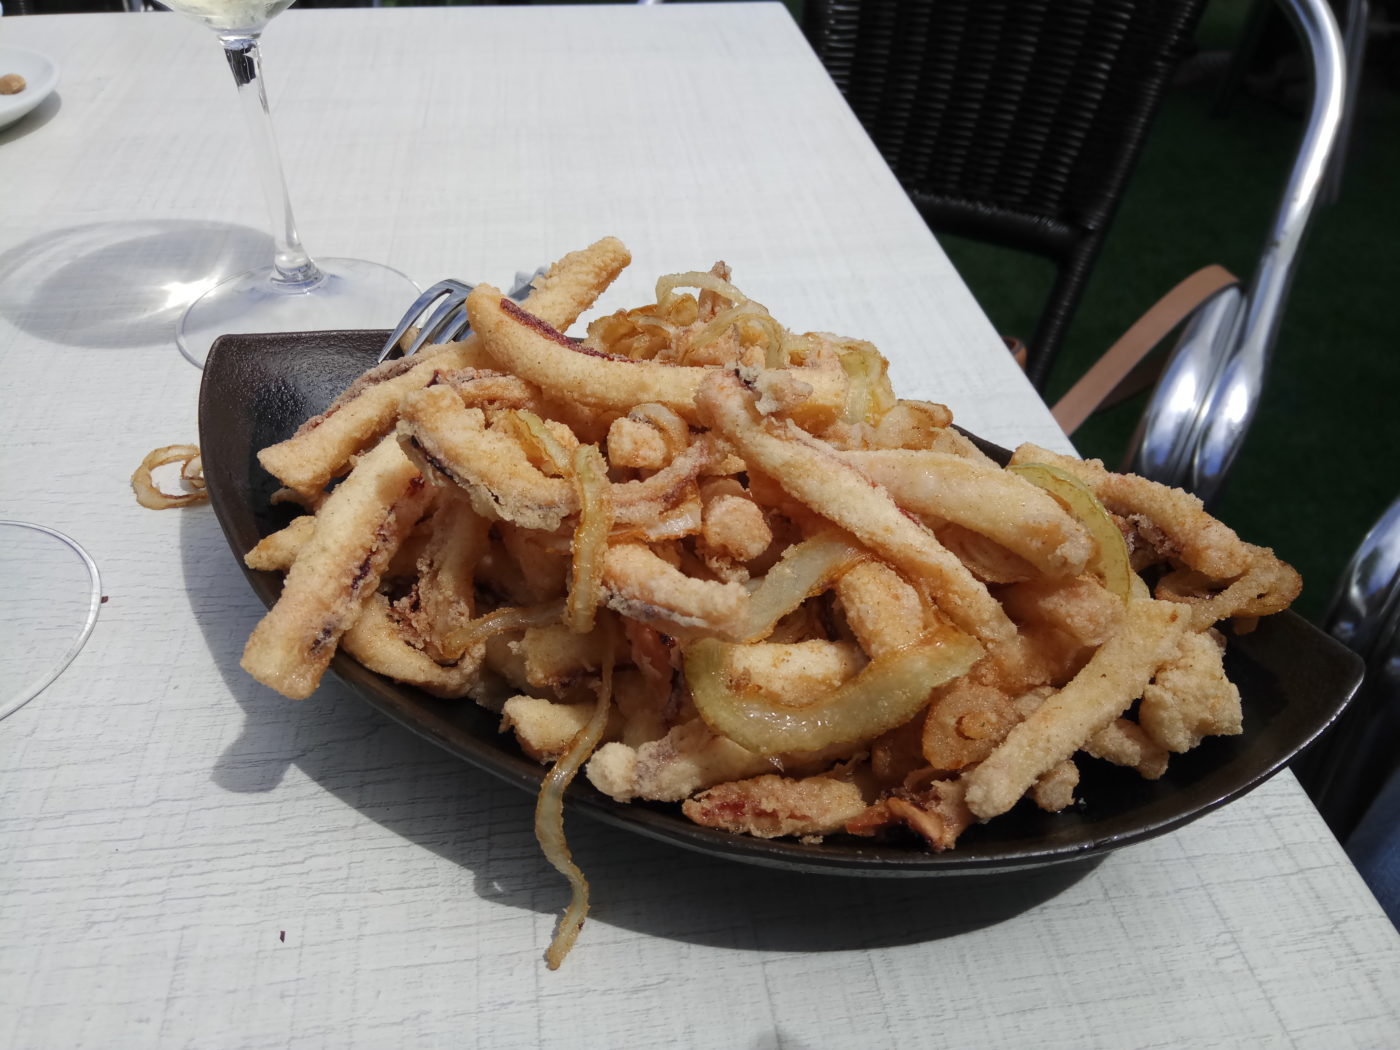 Rabas fritas con aros de cebolla - Azabache